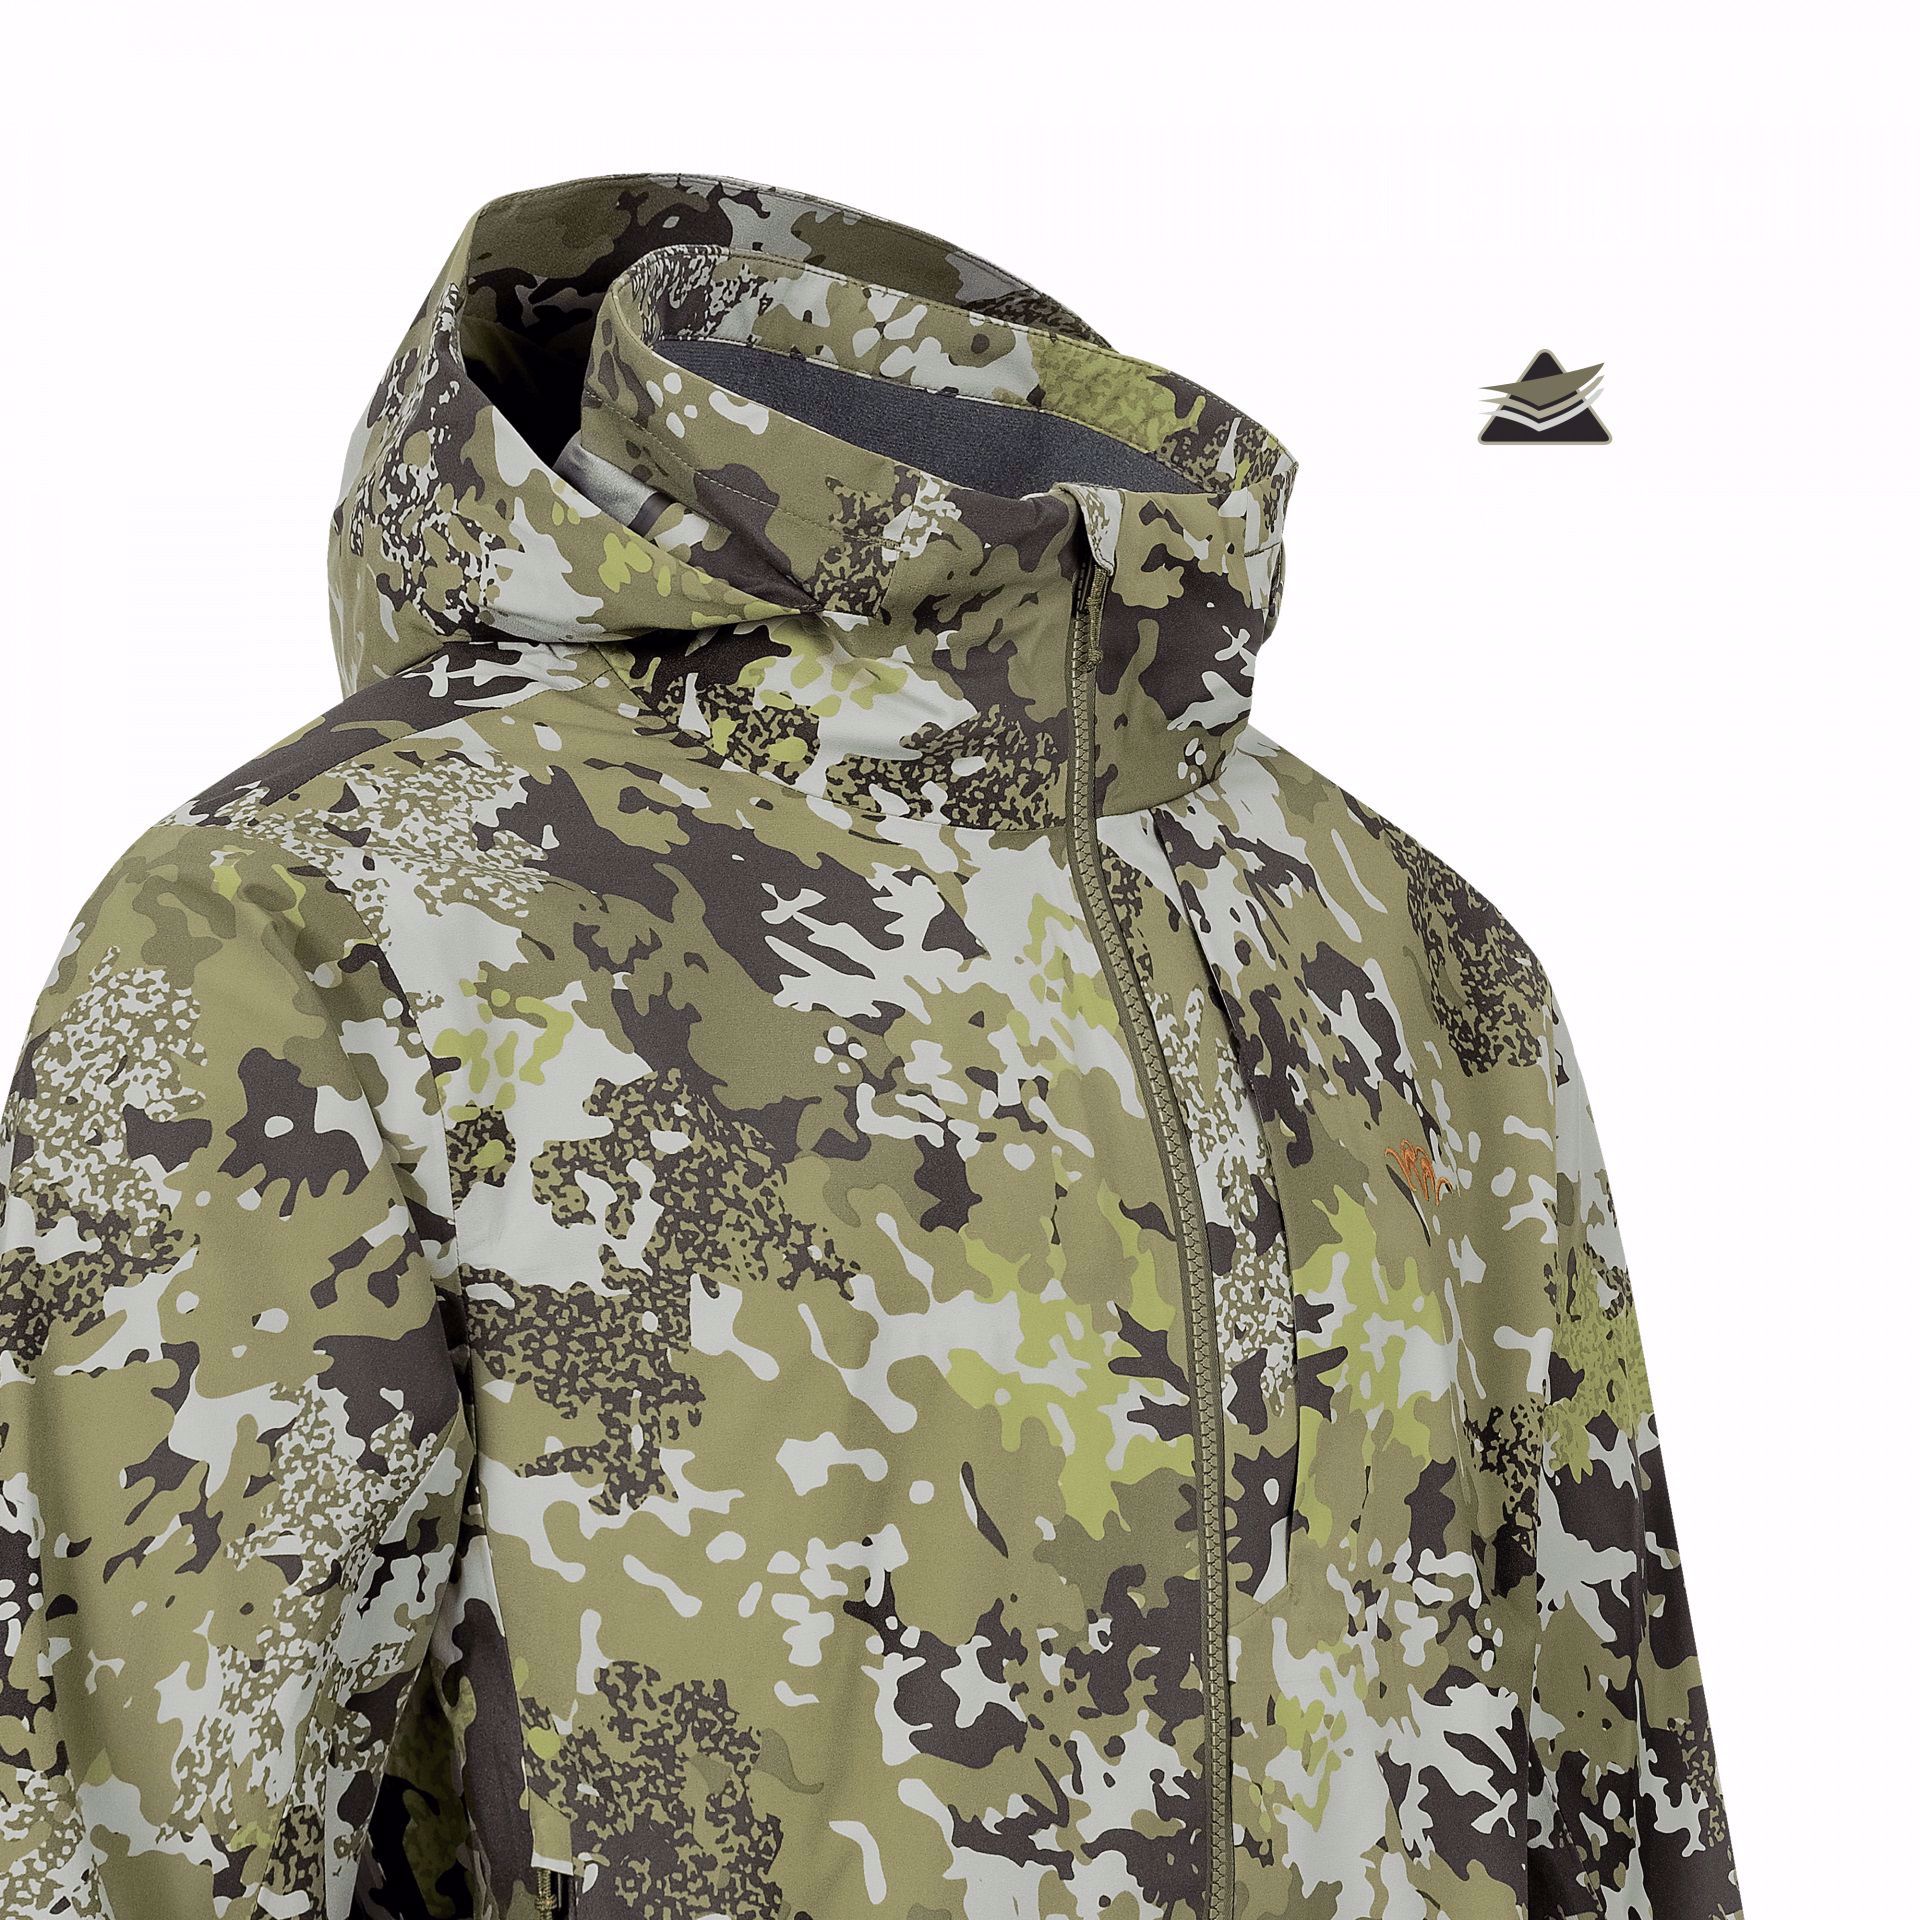 Blaser Venture 3L Jacket HunTec Camouflage Herre